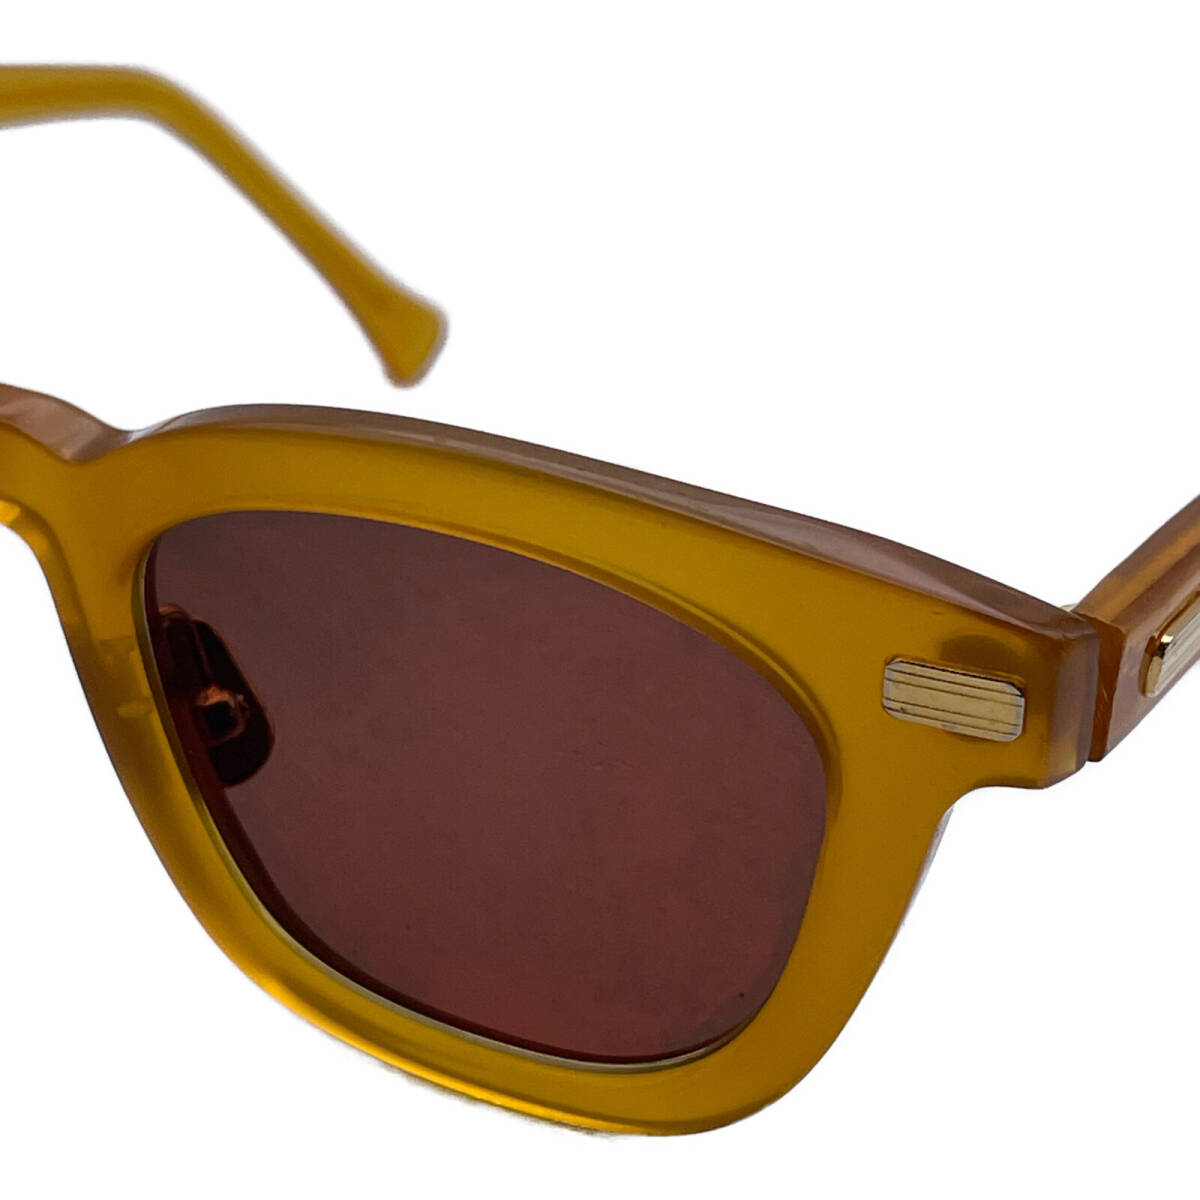 1 jpy NATIVE SONSneitib sun z yellow kowalskikowaru ski glasses frame sunglasses 47.5*22-14